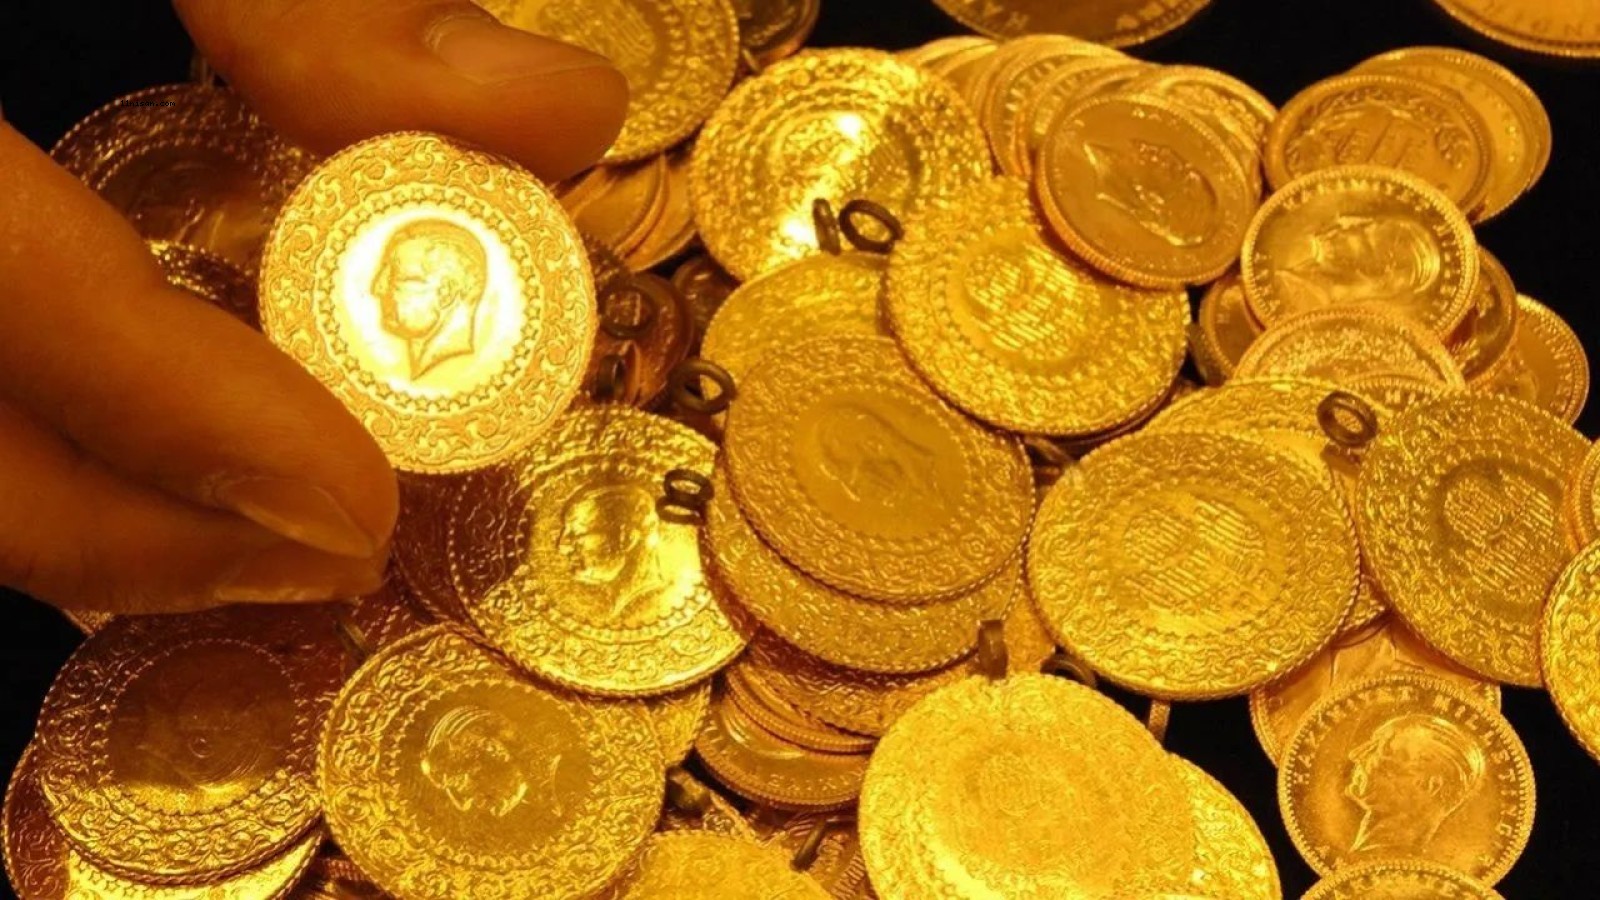 Şanlıurfa’dak kuyumcularda güncel altın fiyatları